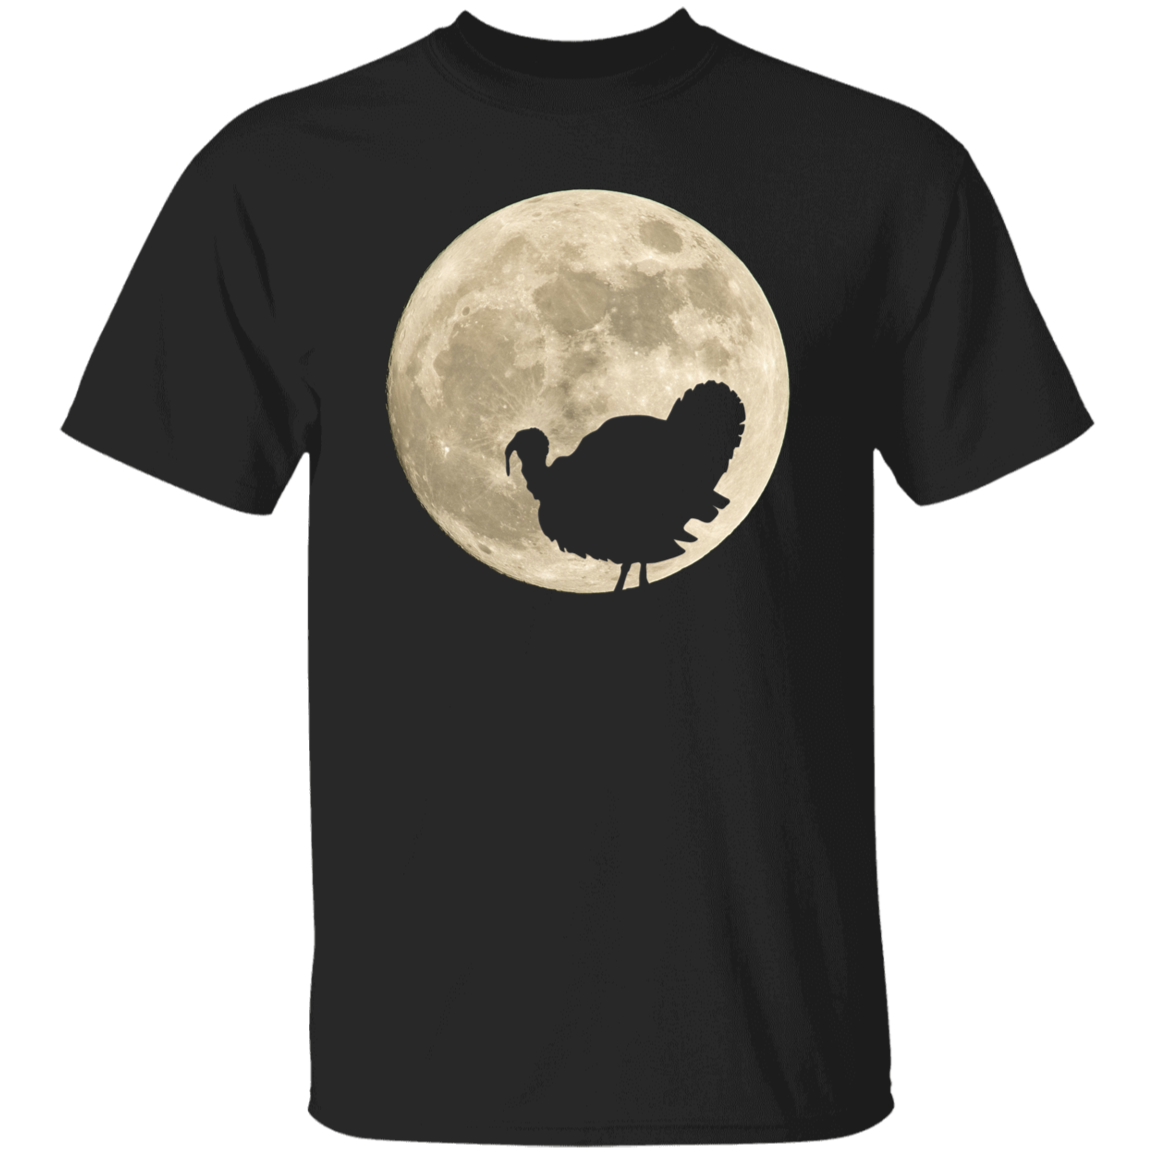 Turkey Moon - T-shirts, Hoodies and Sweatshirts